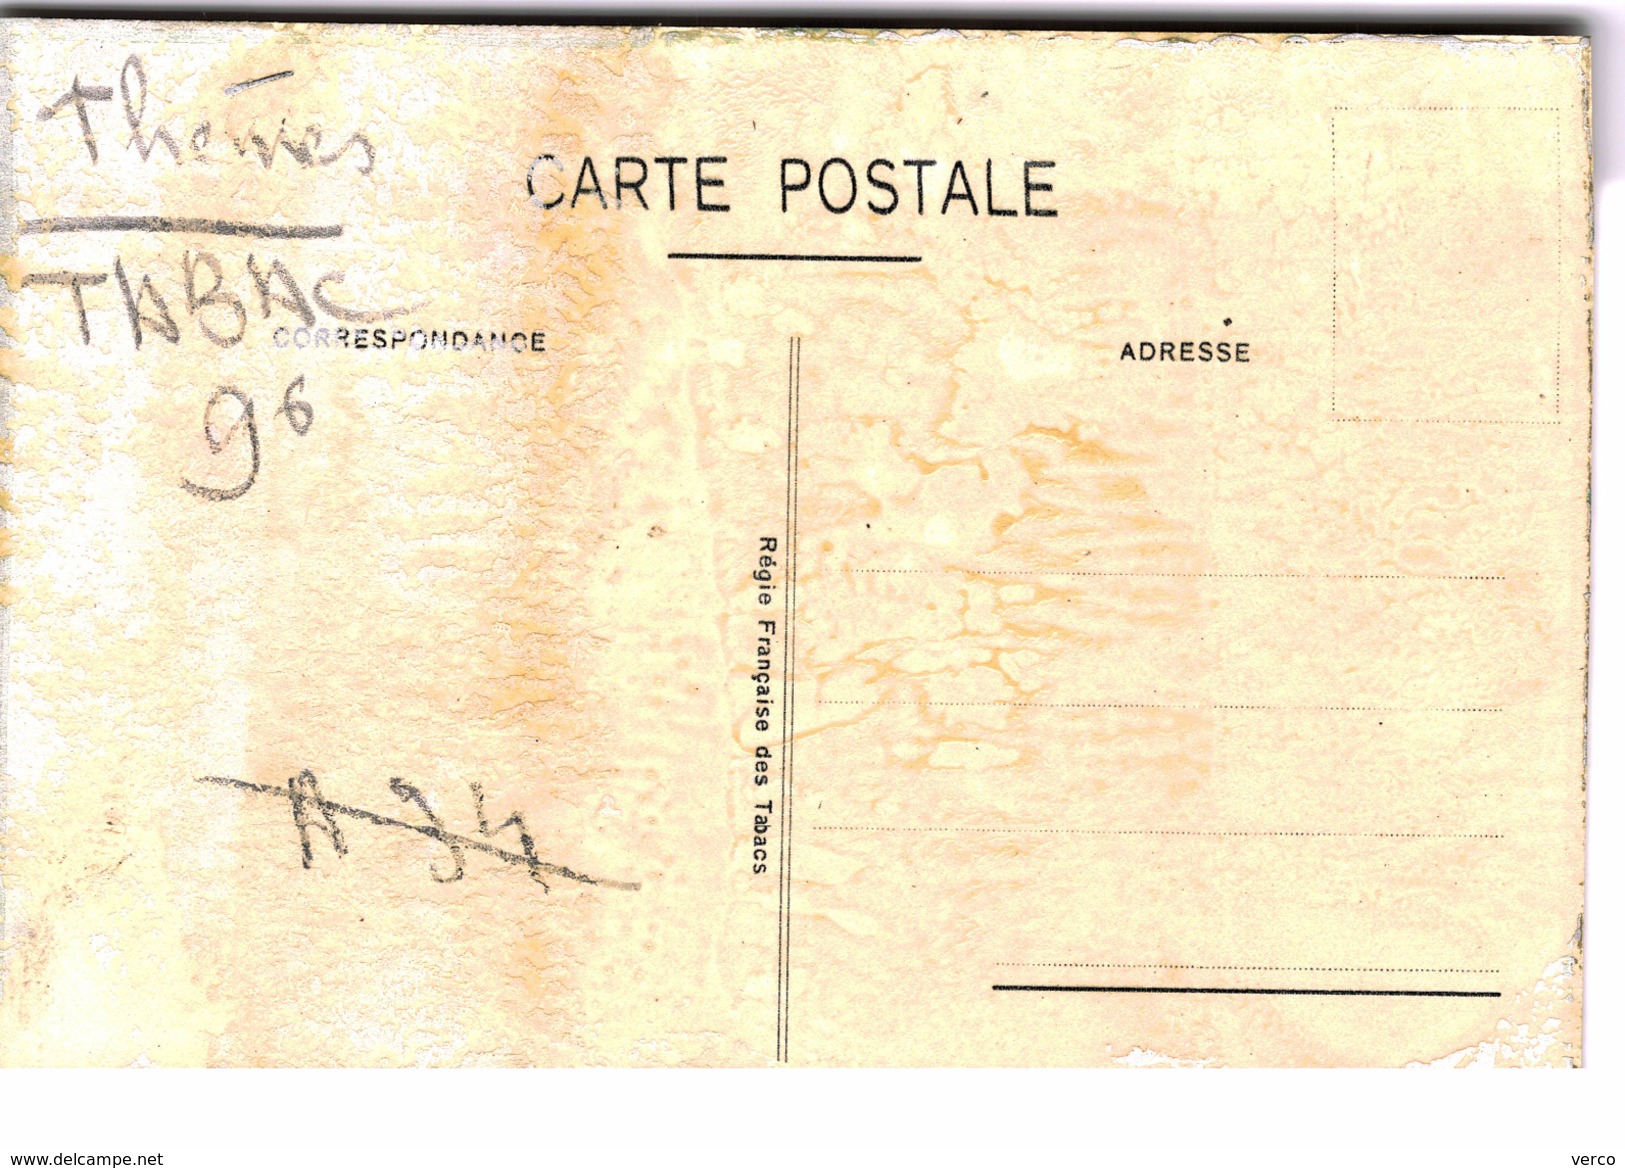 Carte Postale Ancienne De TABAC - PUBLICITE - Tobacco